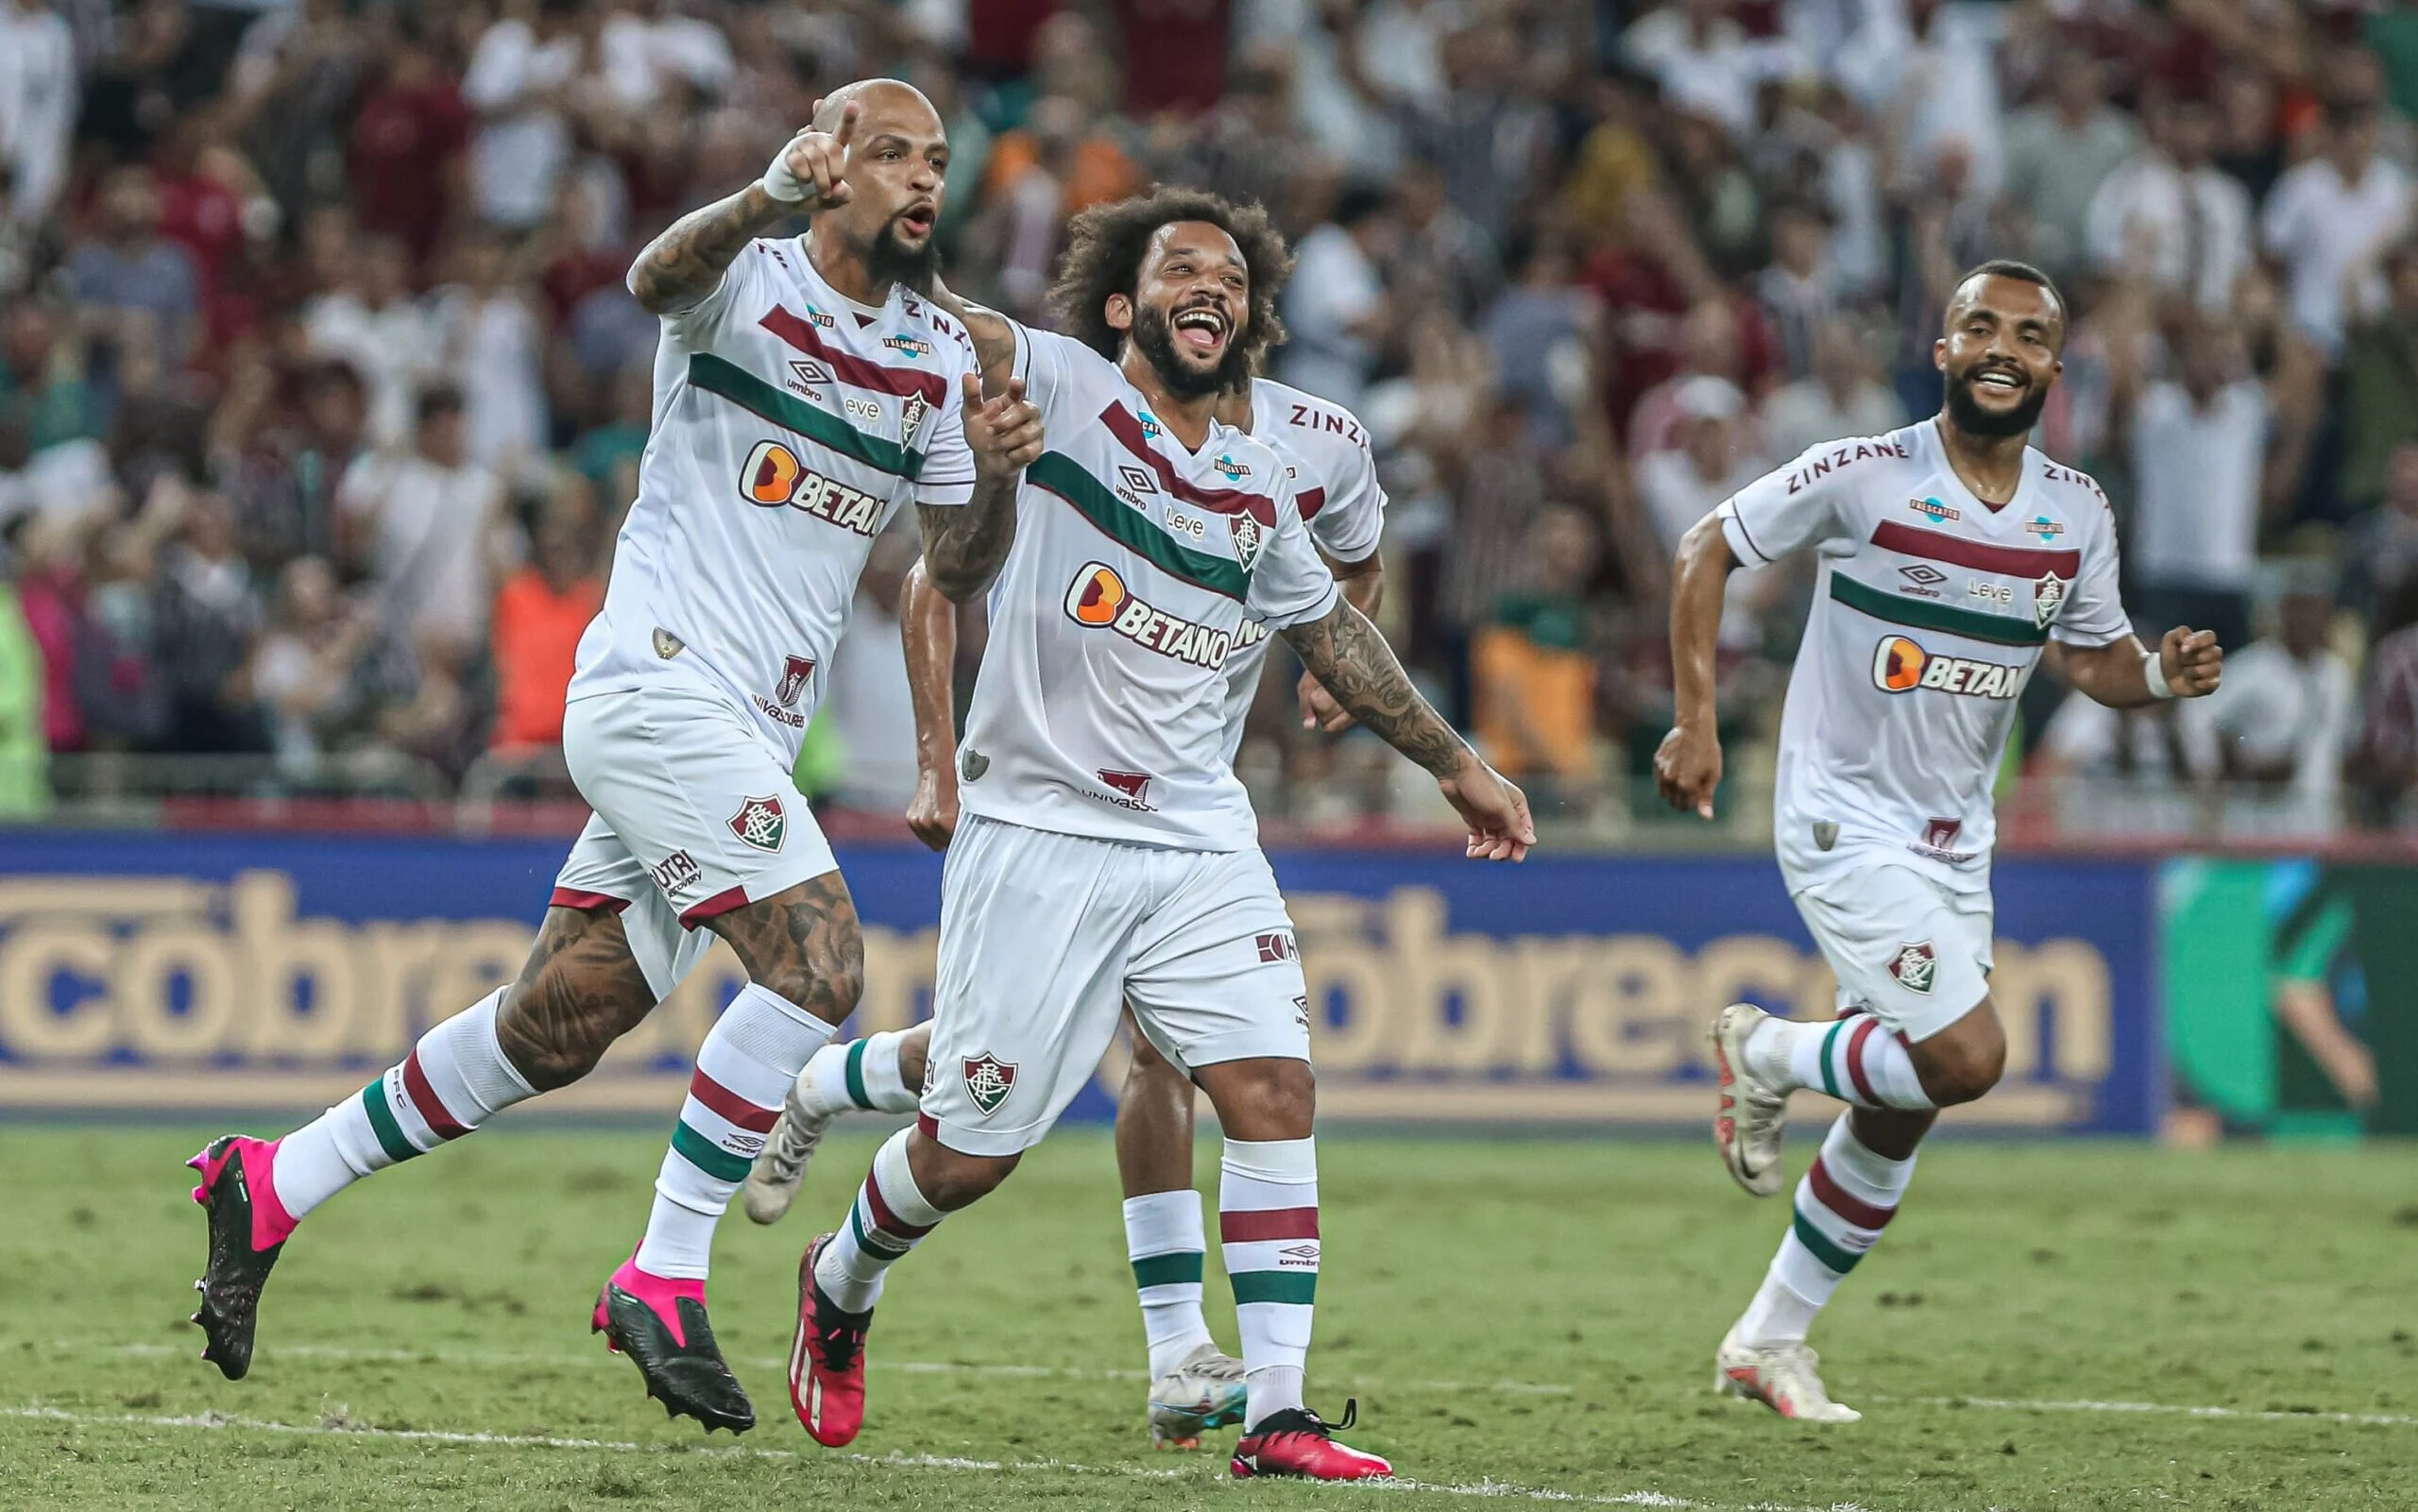 Colo Colo-Fluminense, il pronostico di Copa Libertadores: vittoria in vista per gli ospiti